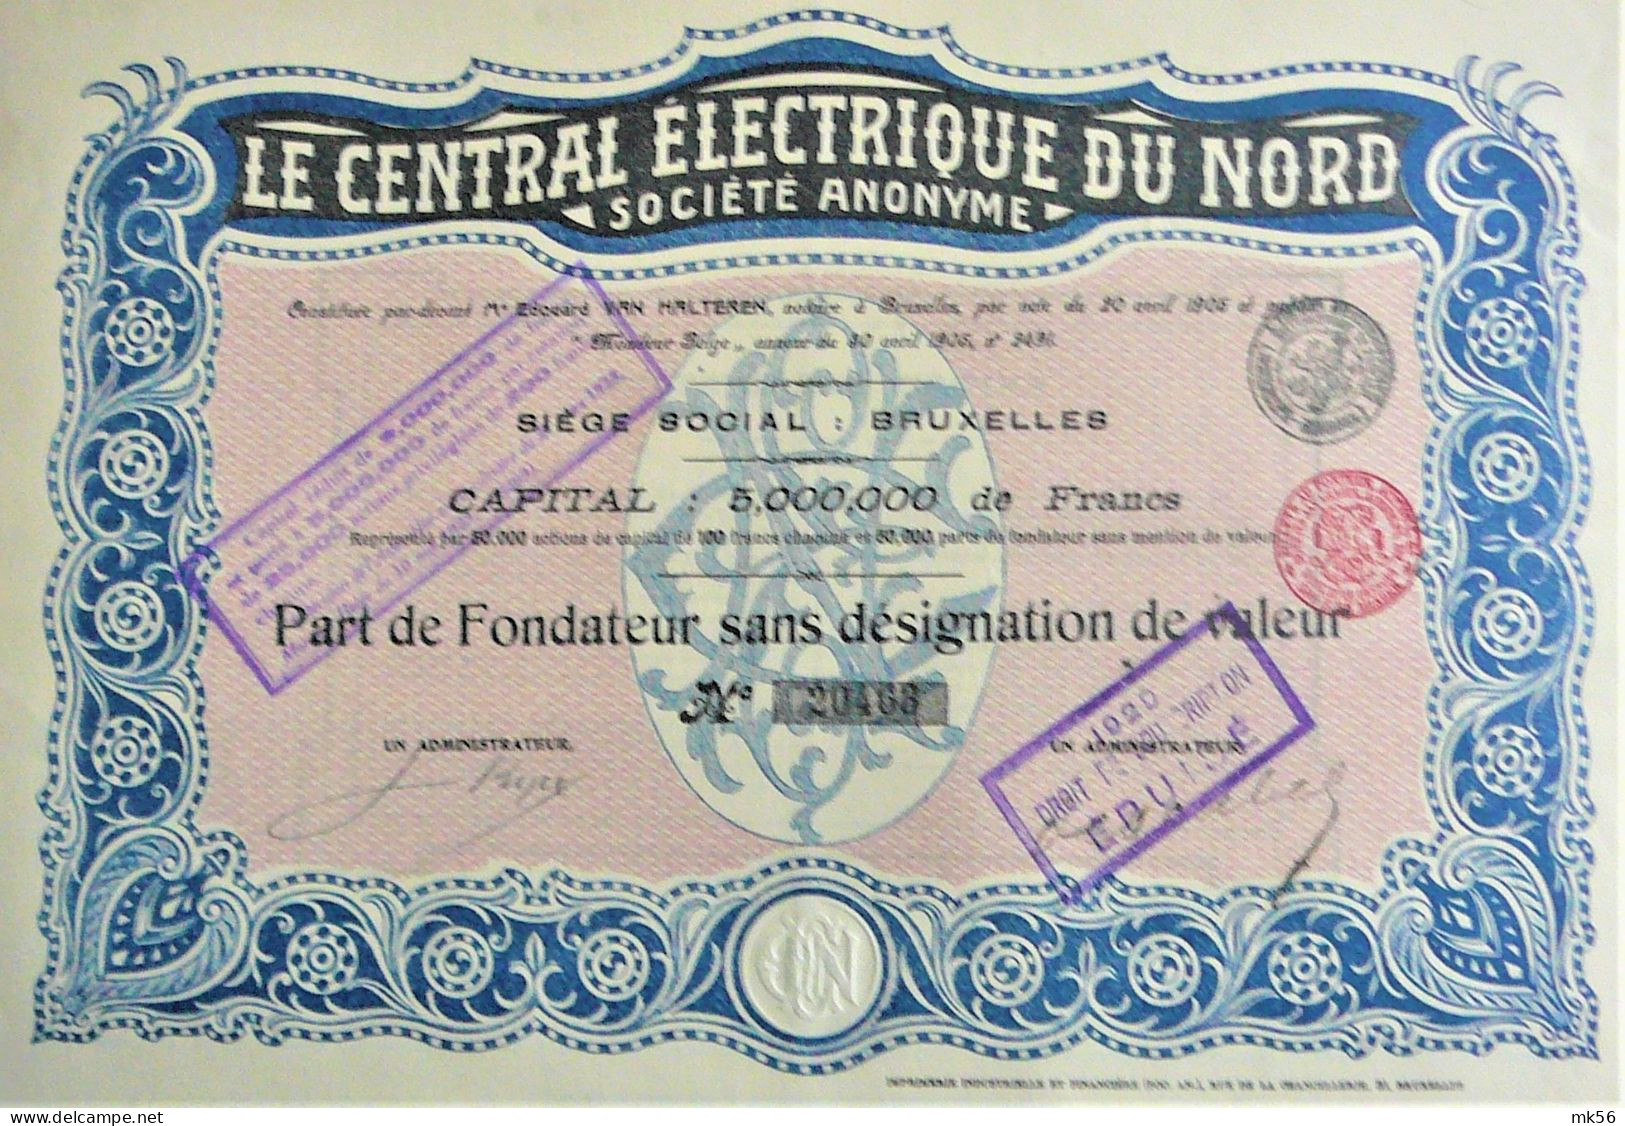 S.A. Le Central Electrique Du Nord -part De Fondateur (1905) - Electricity & Gas